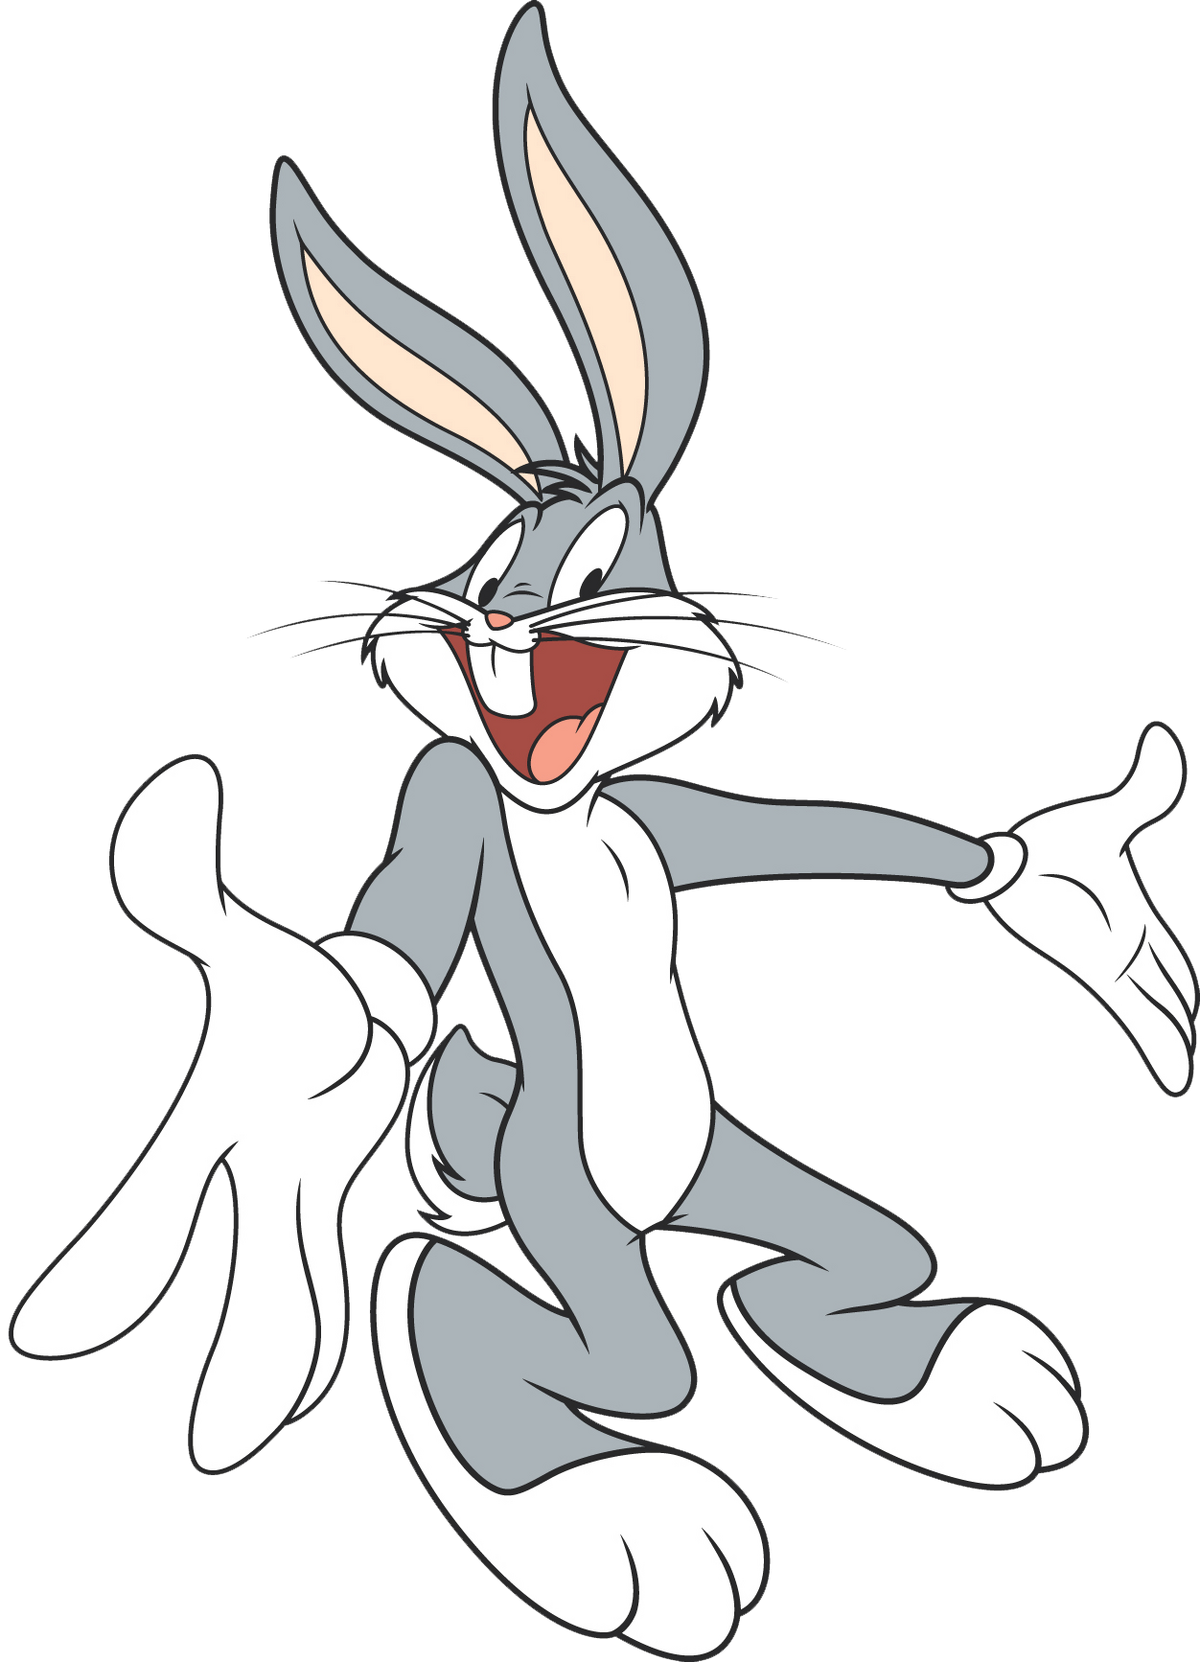 Кролик Багз Банни. Багз заяц заяц Банни. Луни Тюнз кролик Багз Банни. Б̆̈ӑ̈к̆̈с̆̈ б̆̈ӑ̈н̆̈н̆̈й̈. Песня заяц бакс бани